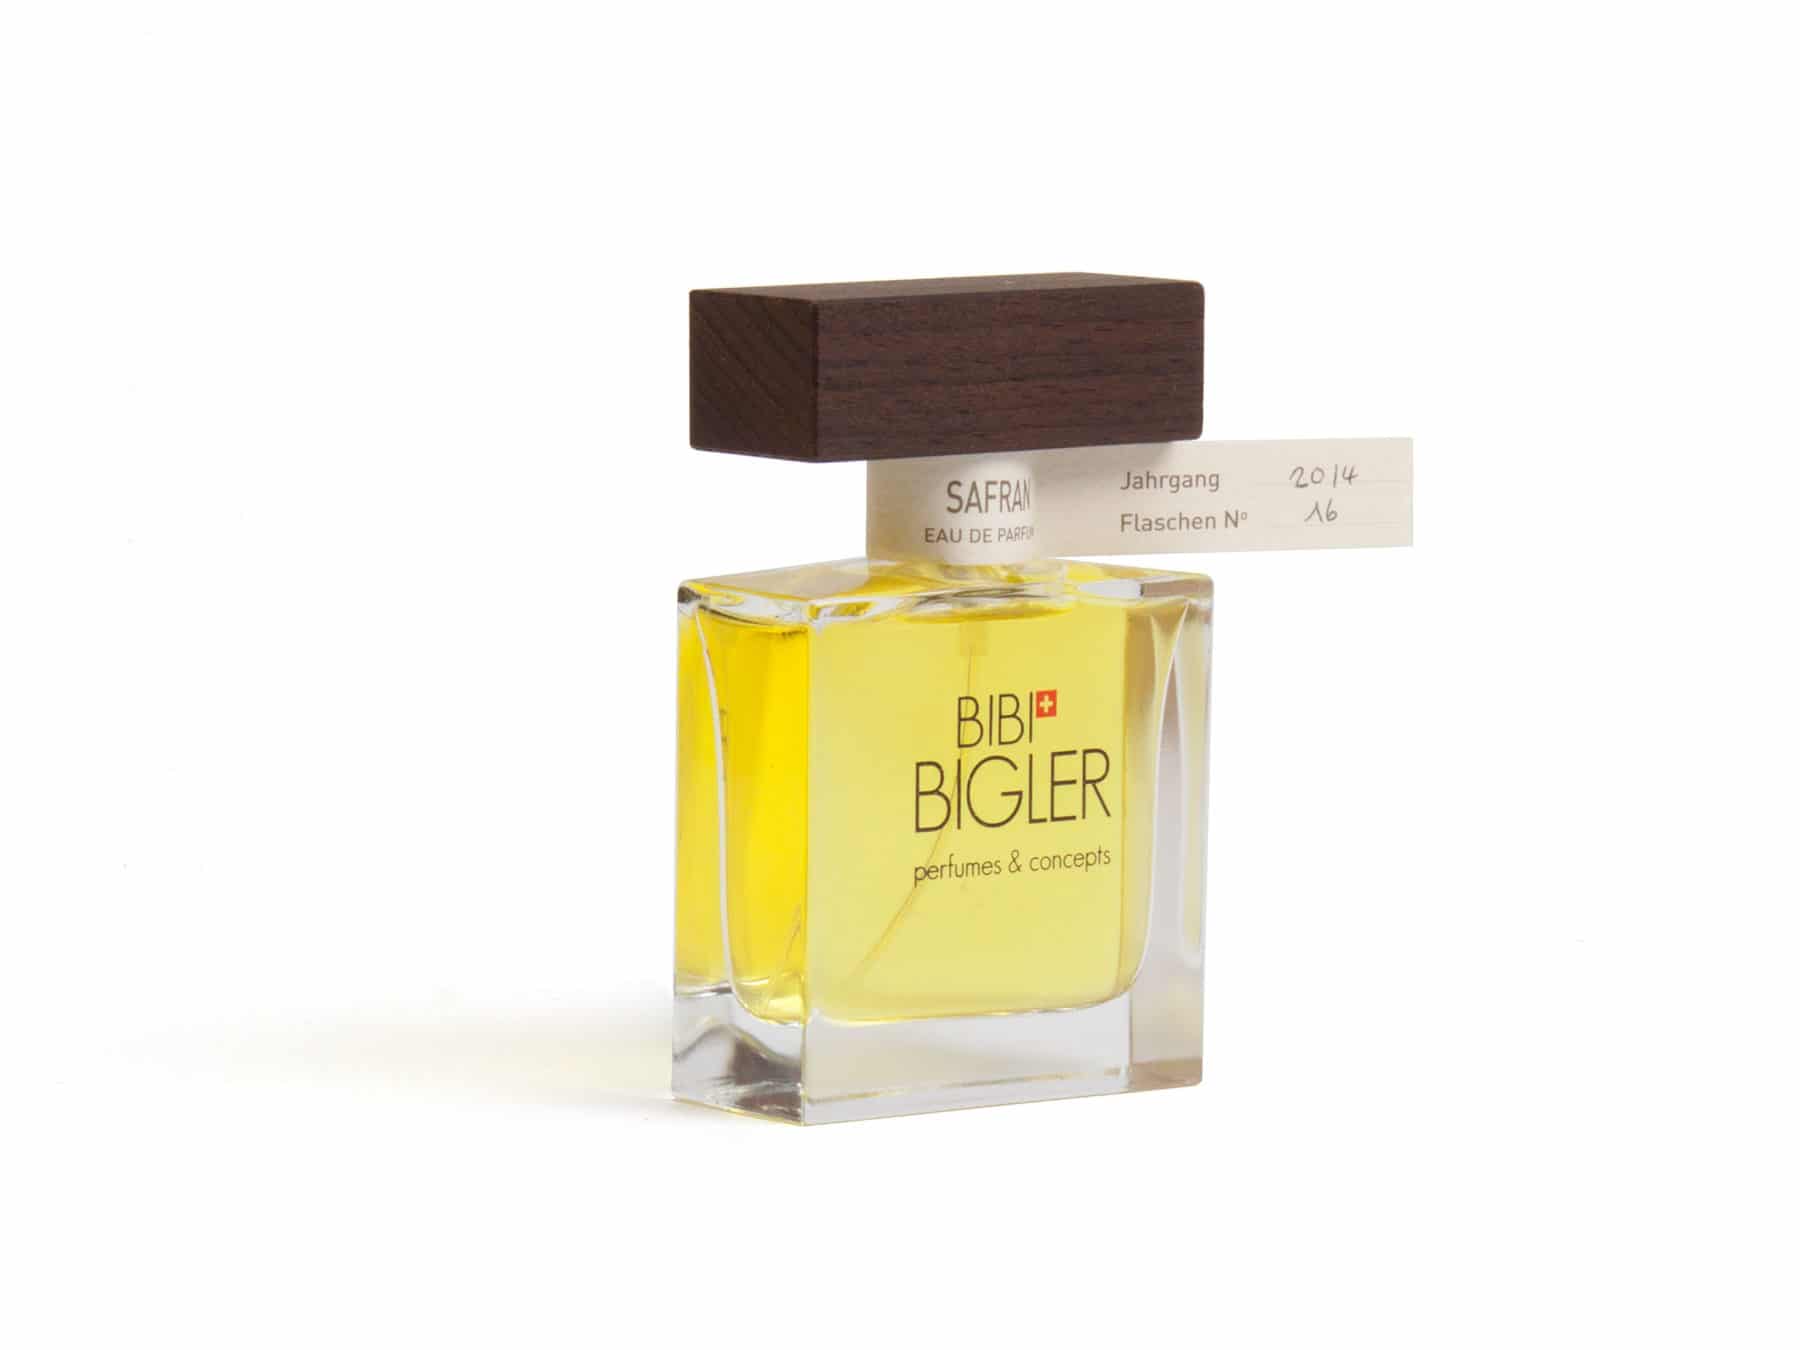 Safran Parfum Schweiz handmade Eau de parfum Bigler KURTS.ch